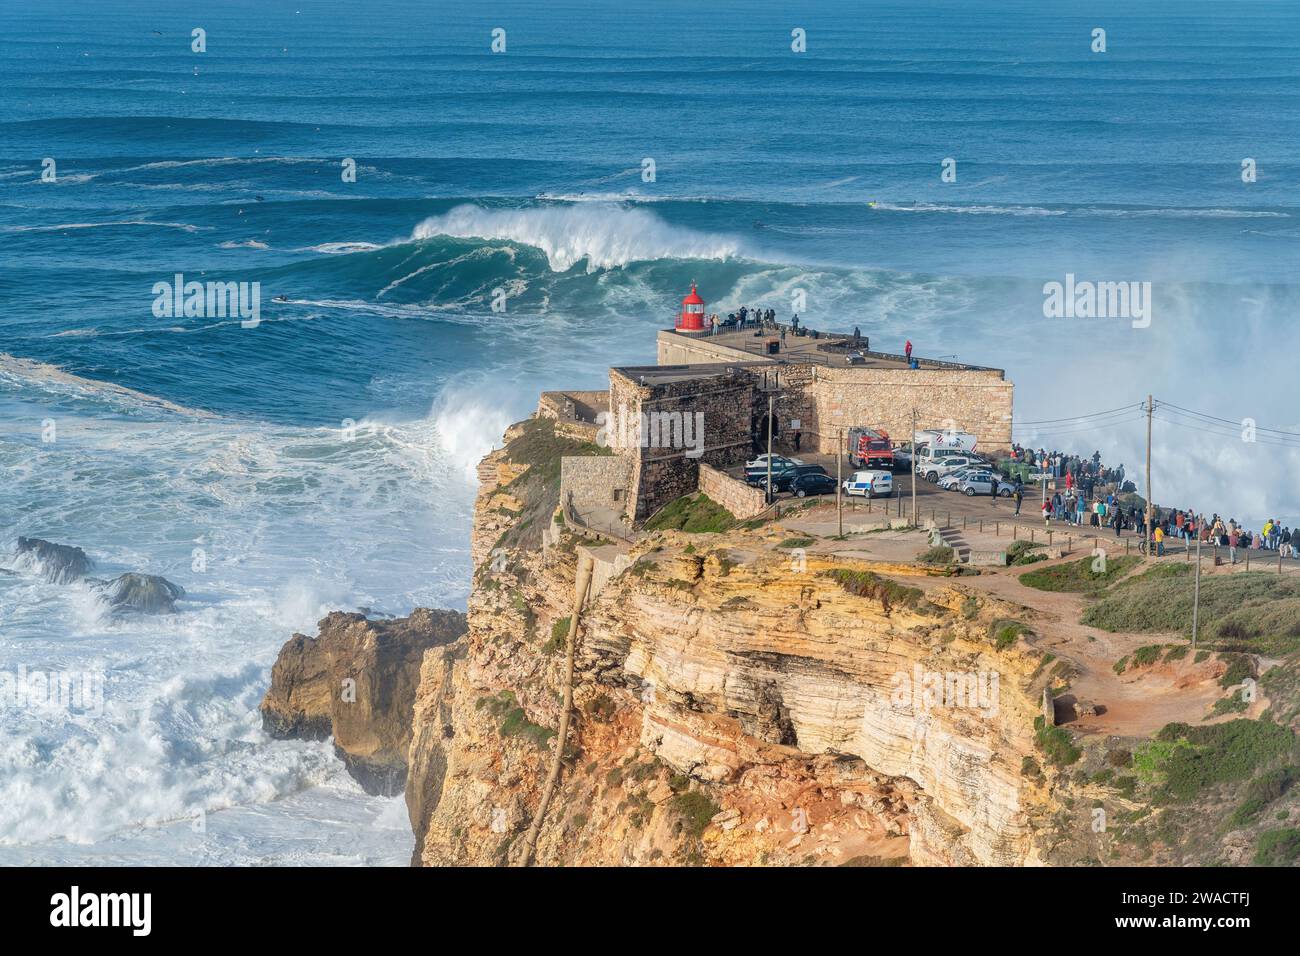 Vagues se brisant près du fort de Sao Miguel Arcanjo phare à Nazare, Portugal, connu des surfeurs pour avoir les plus grandes vagues du monde. Banque D'Images